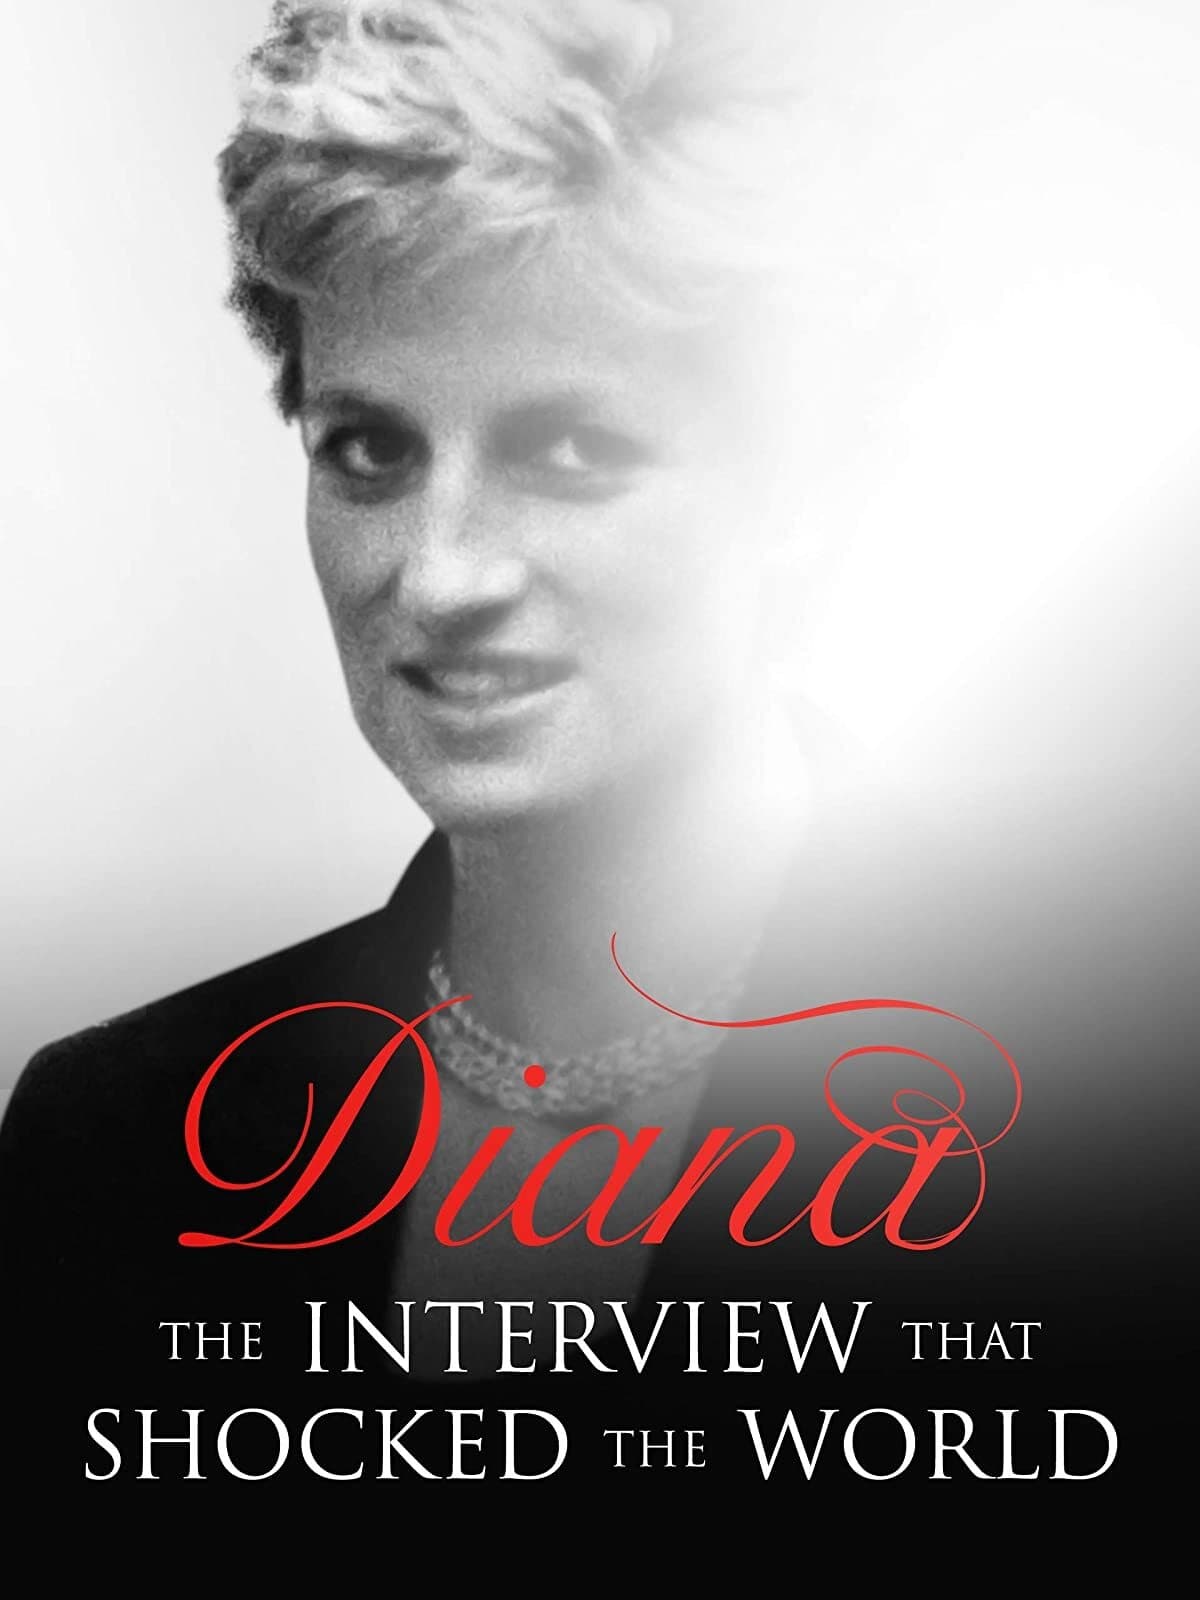 Caratula de Diana: The Interview that Shook the World (Diana, la entrevista que impactó al mundo) 